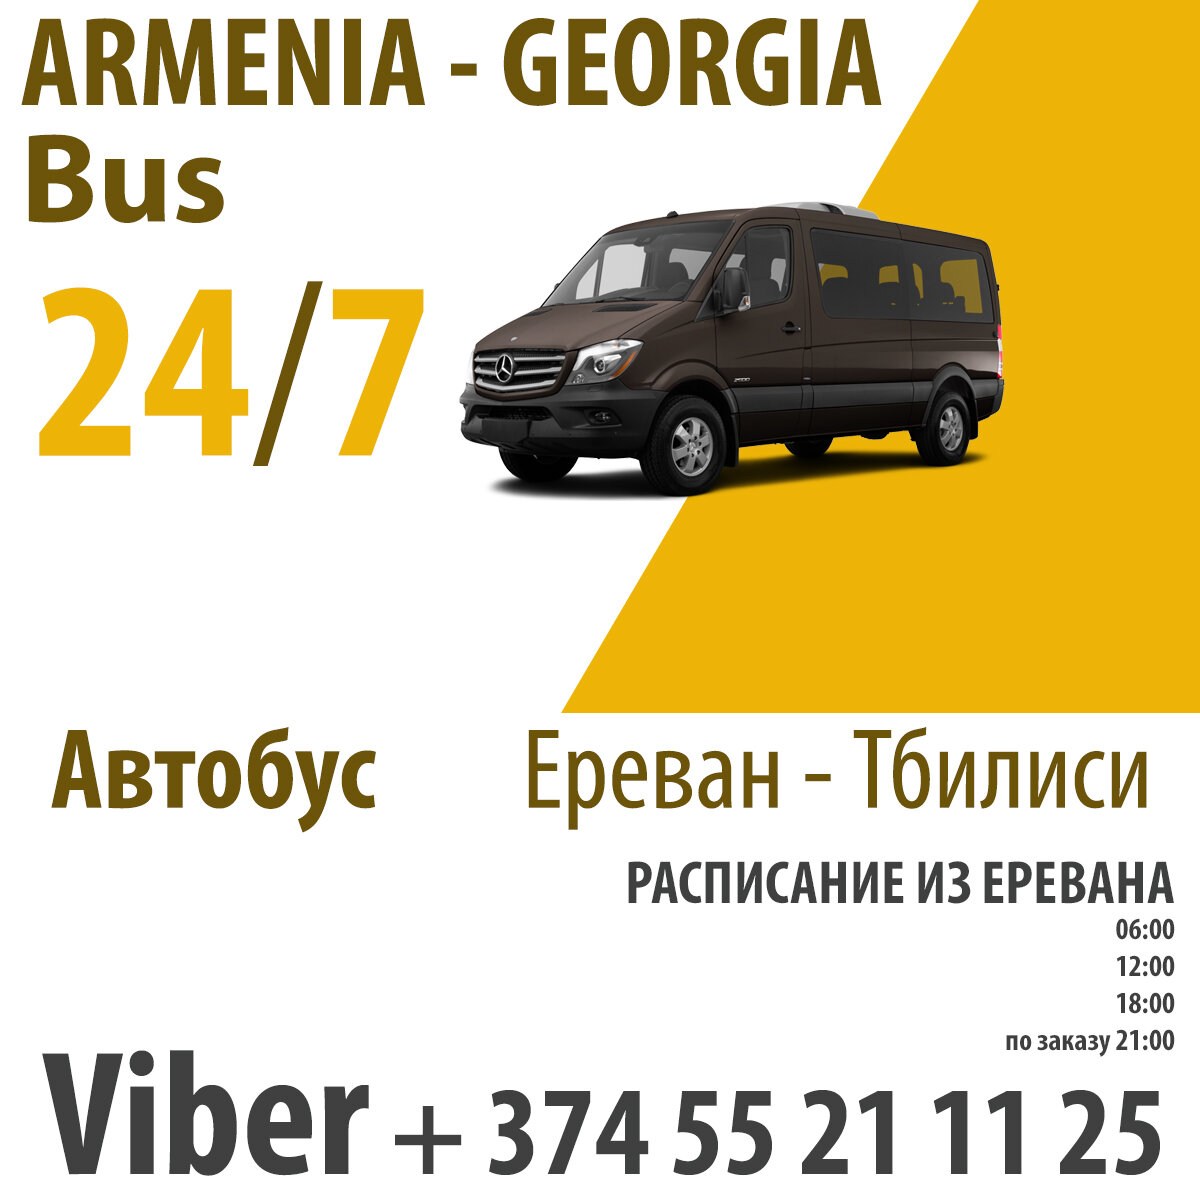 Расписание тбилиси ереван. Ереван Тбилиси автобус. Маршрутки в Тбилиси. Маршрутка из Еревана в Тбилиси. Маршрутки из Тбилиси до Еревана.